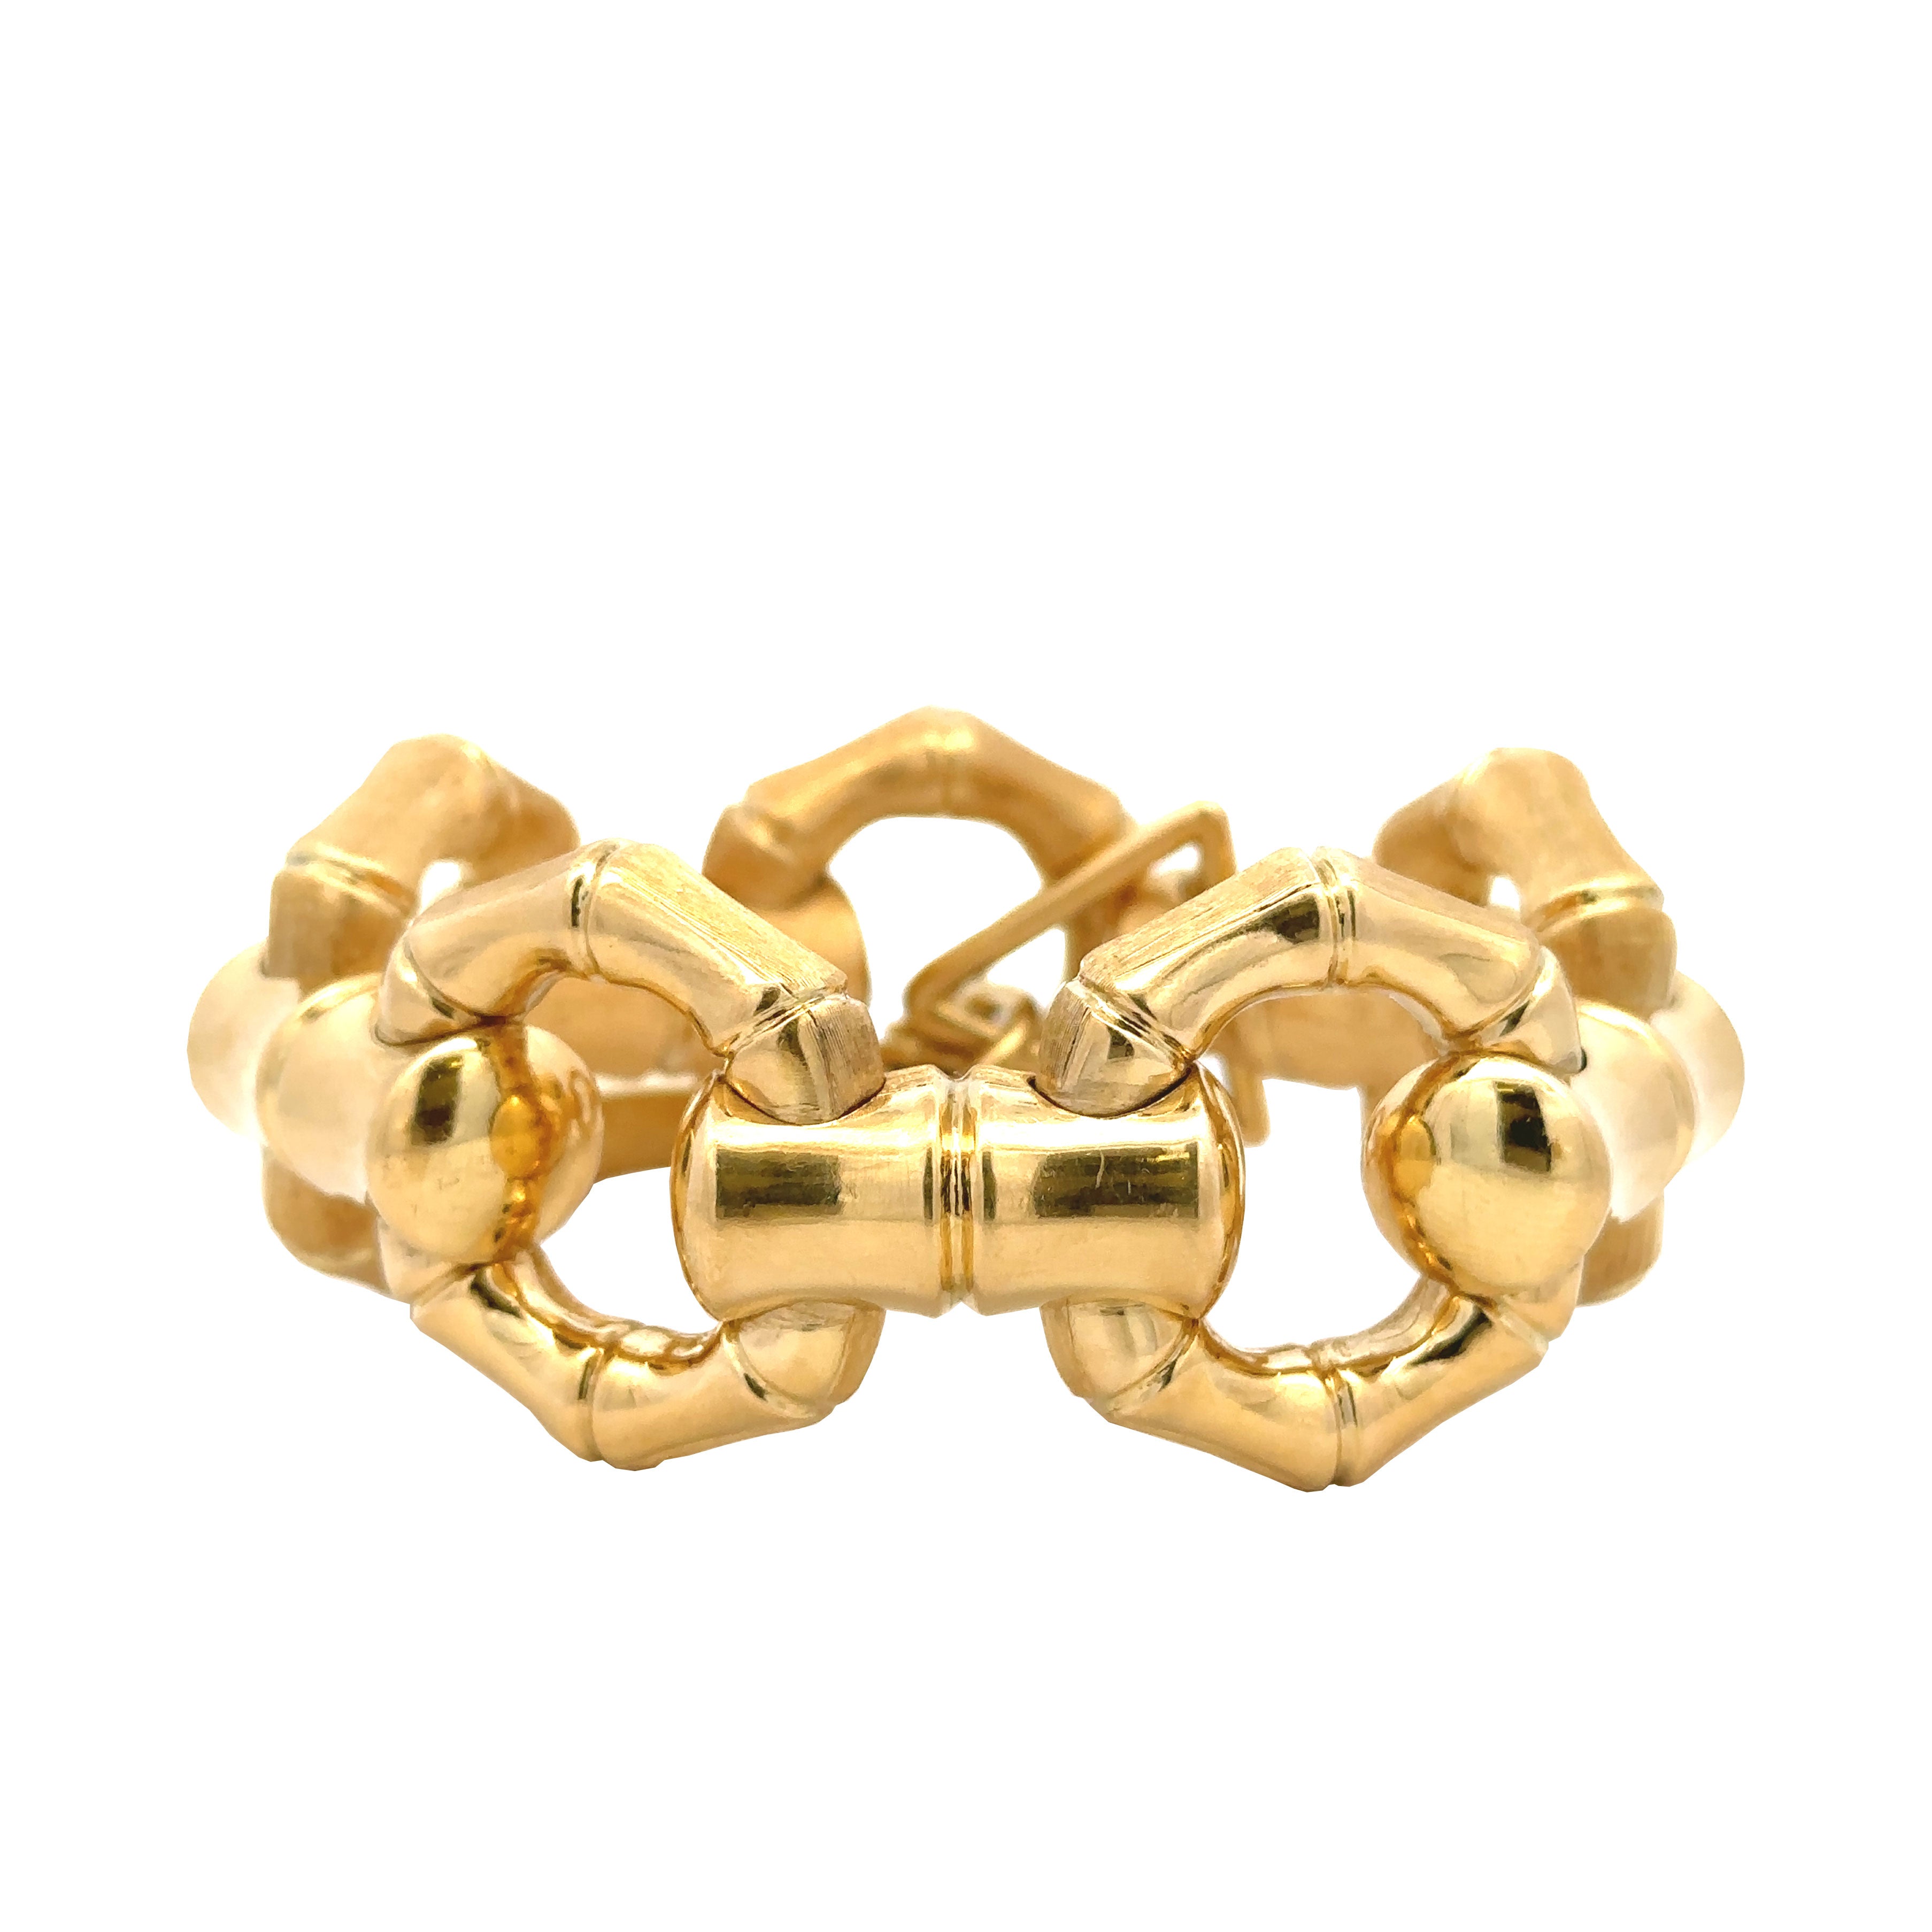 Vintage Gold Bamboo link bracelet, reversible: high-polish side & brushed gold side - Be On Park